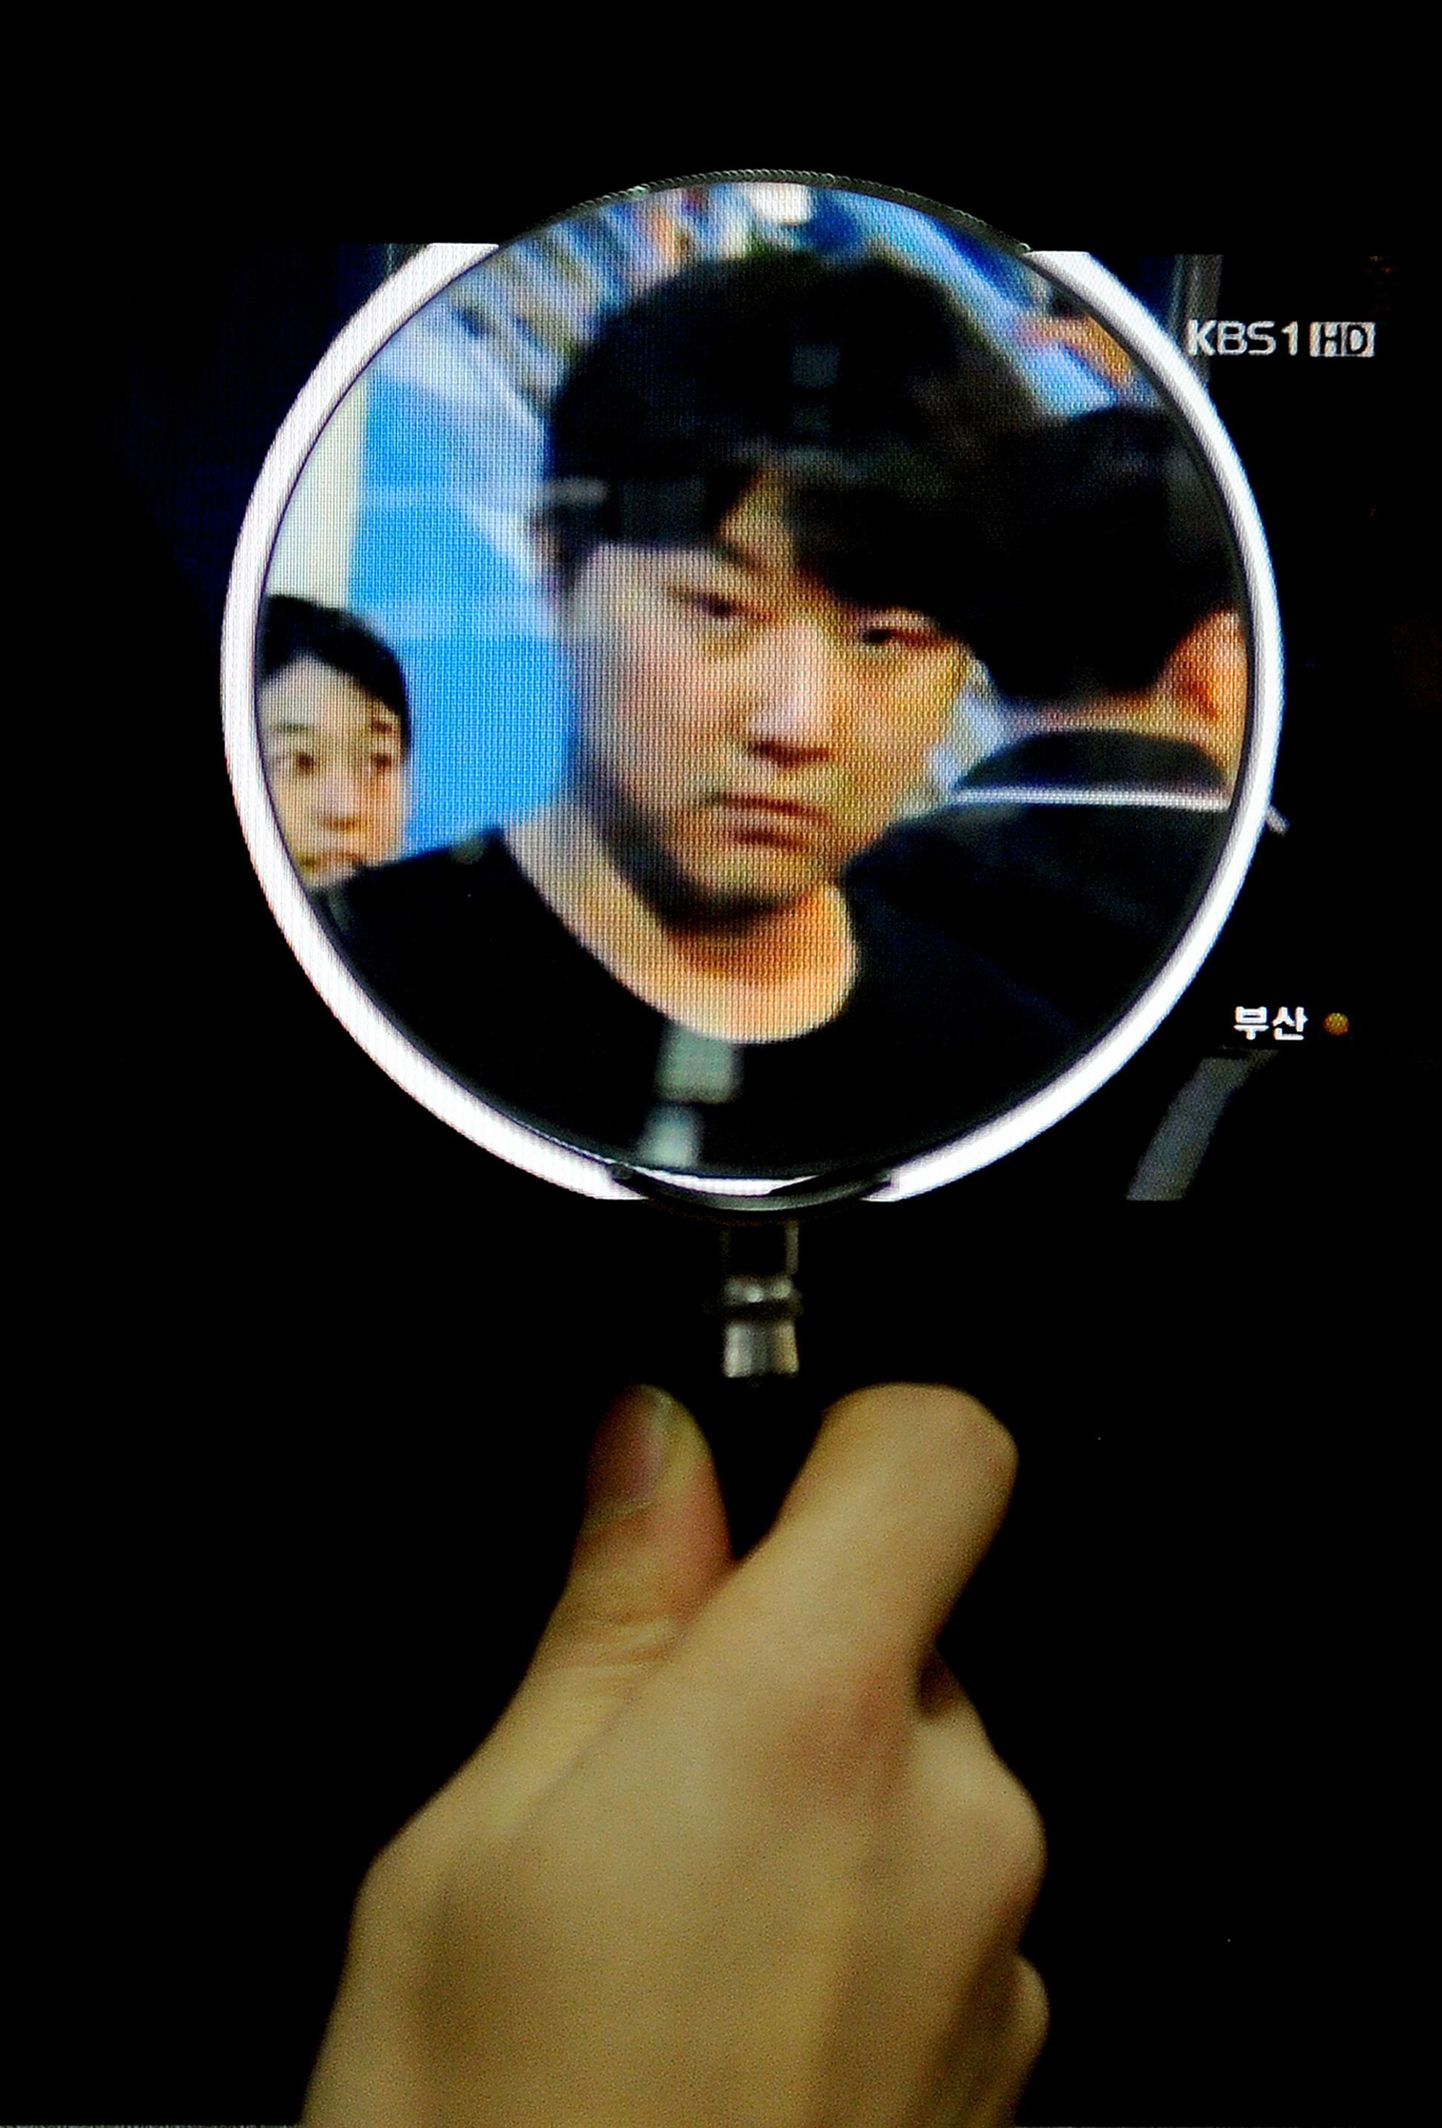 Lõuna-Korea teletöötaja vaatamas arvutiekraanilt suurendusklaasi abil Kim Jong-Cholist tehtud fotot